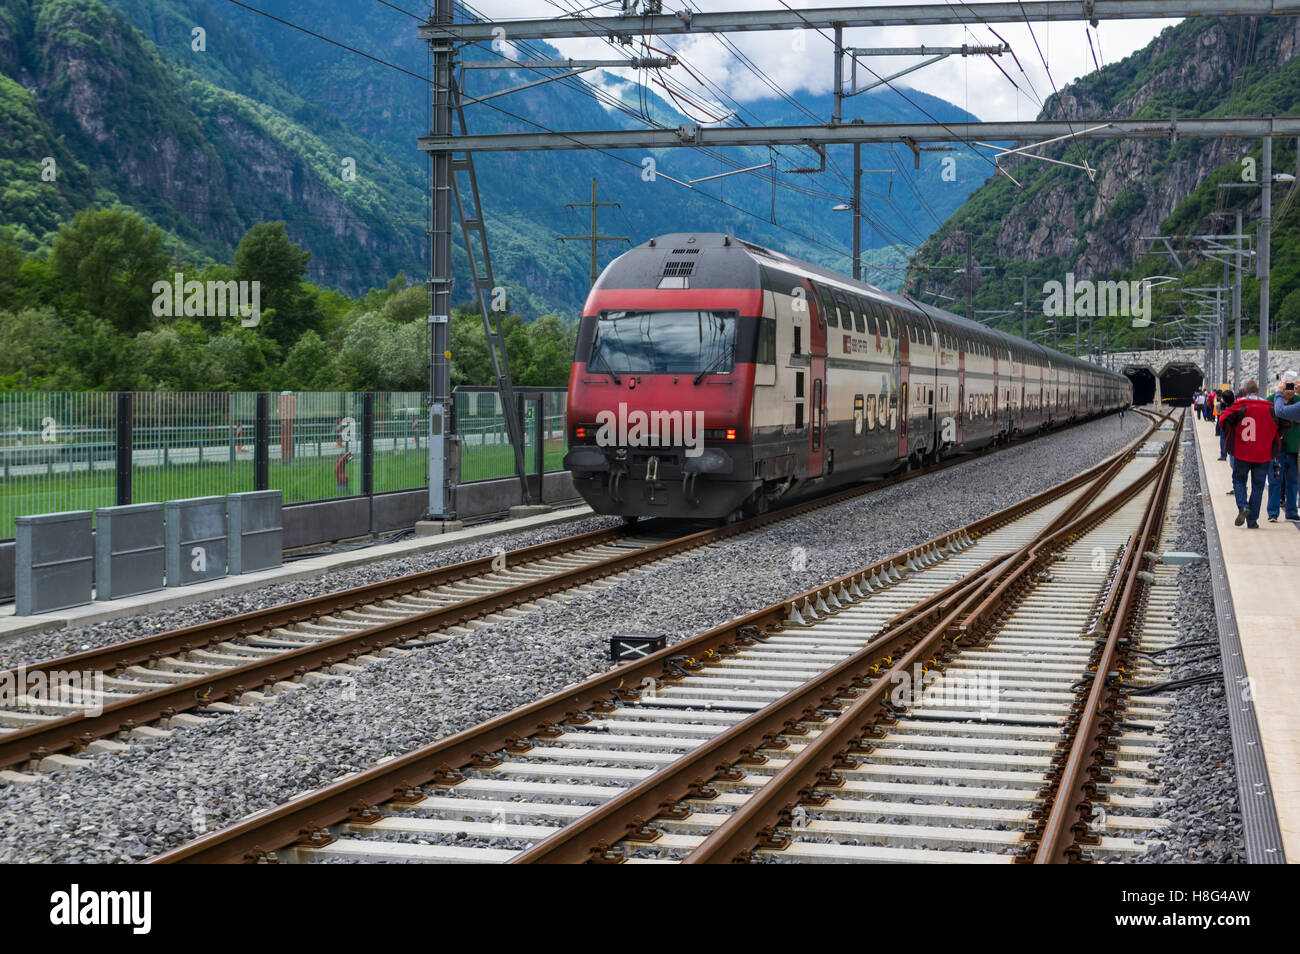 In nördlicher Richtung SBB IC 2000 Doppelstock Personenzug betreten das Südportal des 57km langen Gotthard-Basistunnels. Pollegio, Tessin, Schweiz. Stockfoto